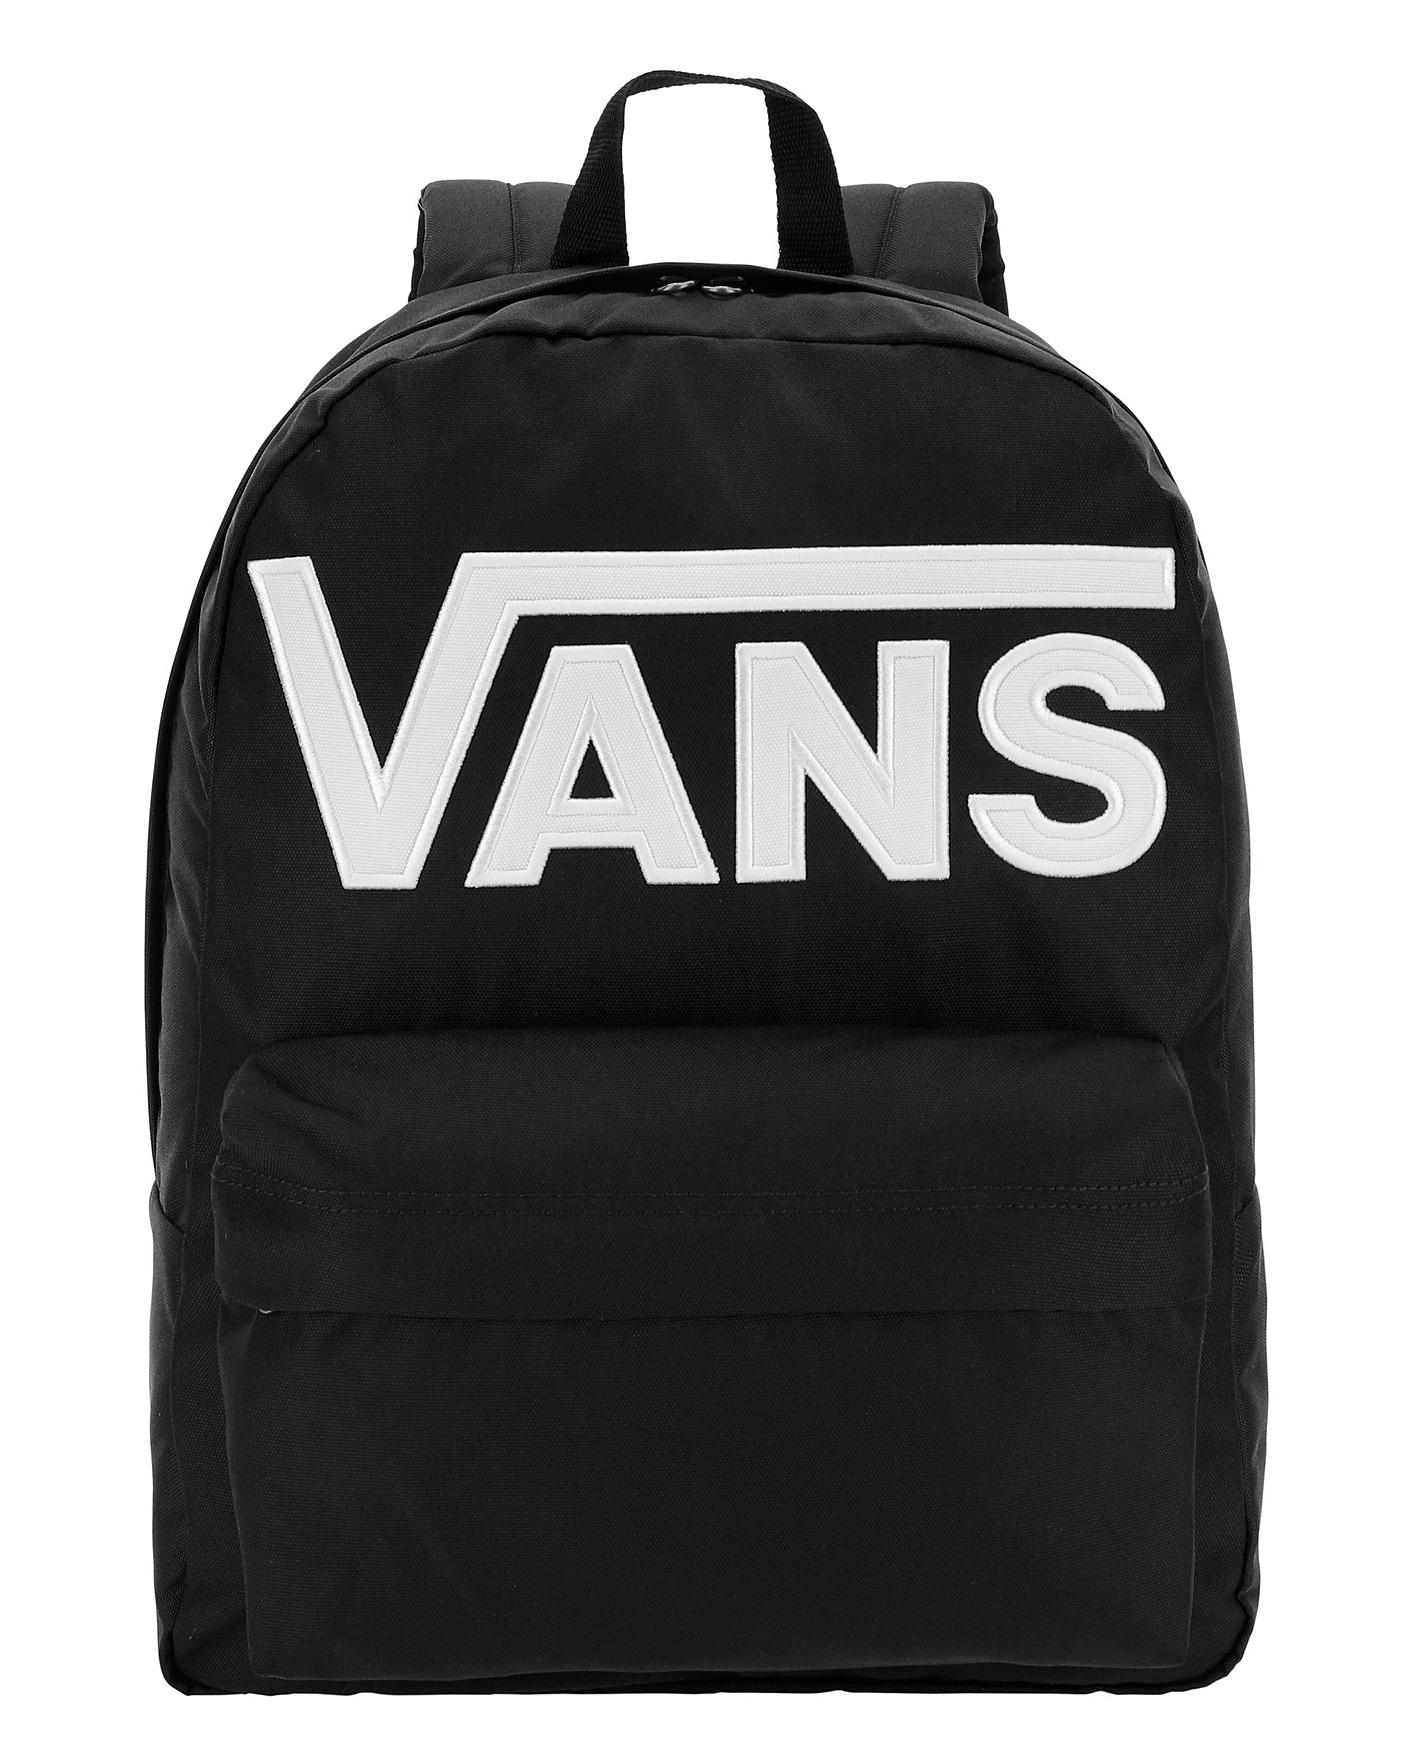 vans backpack sale